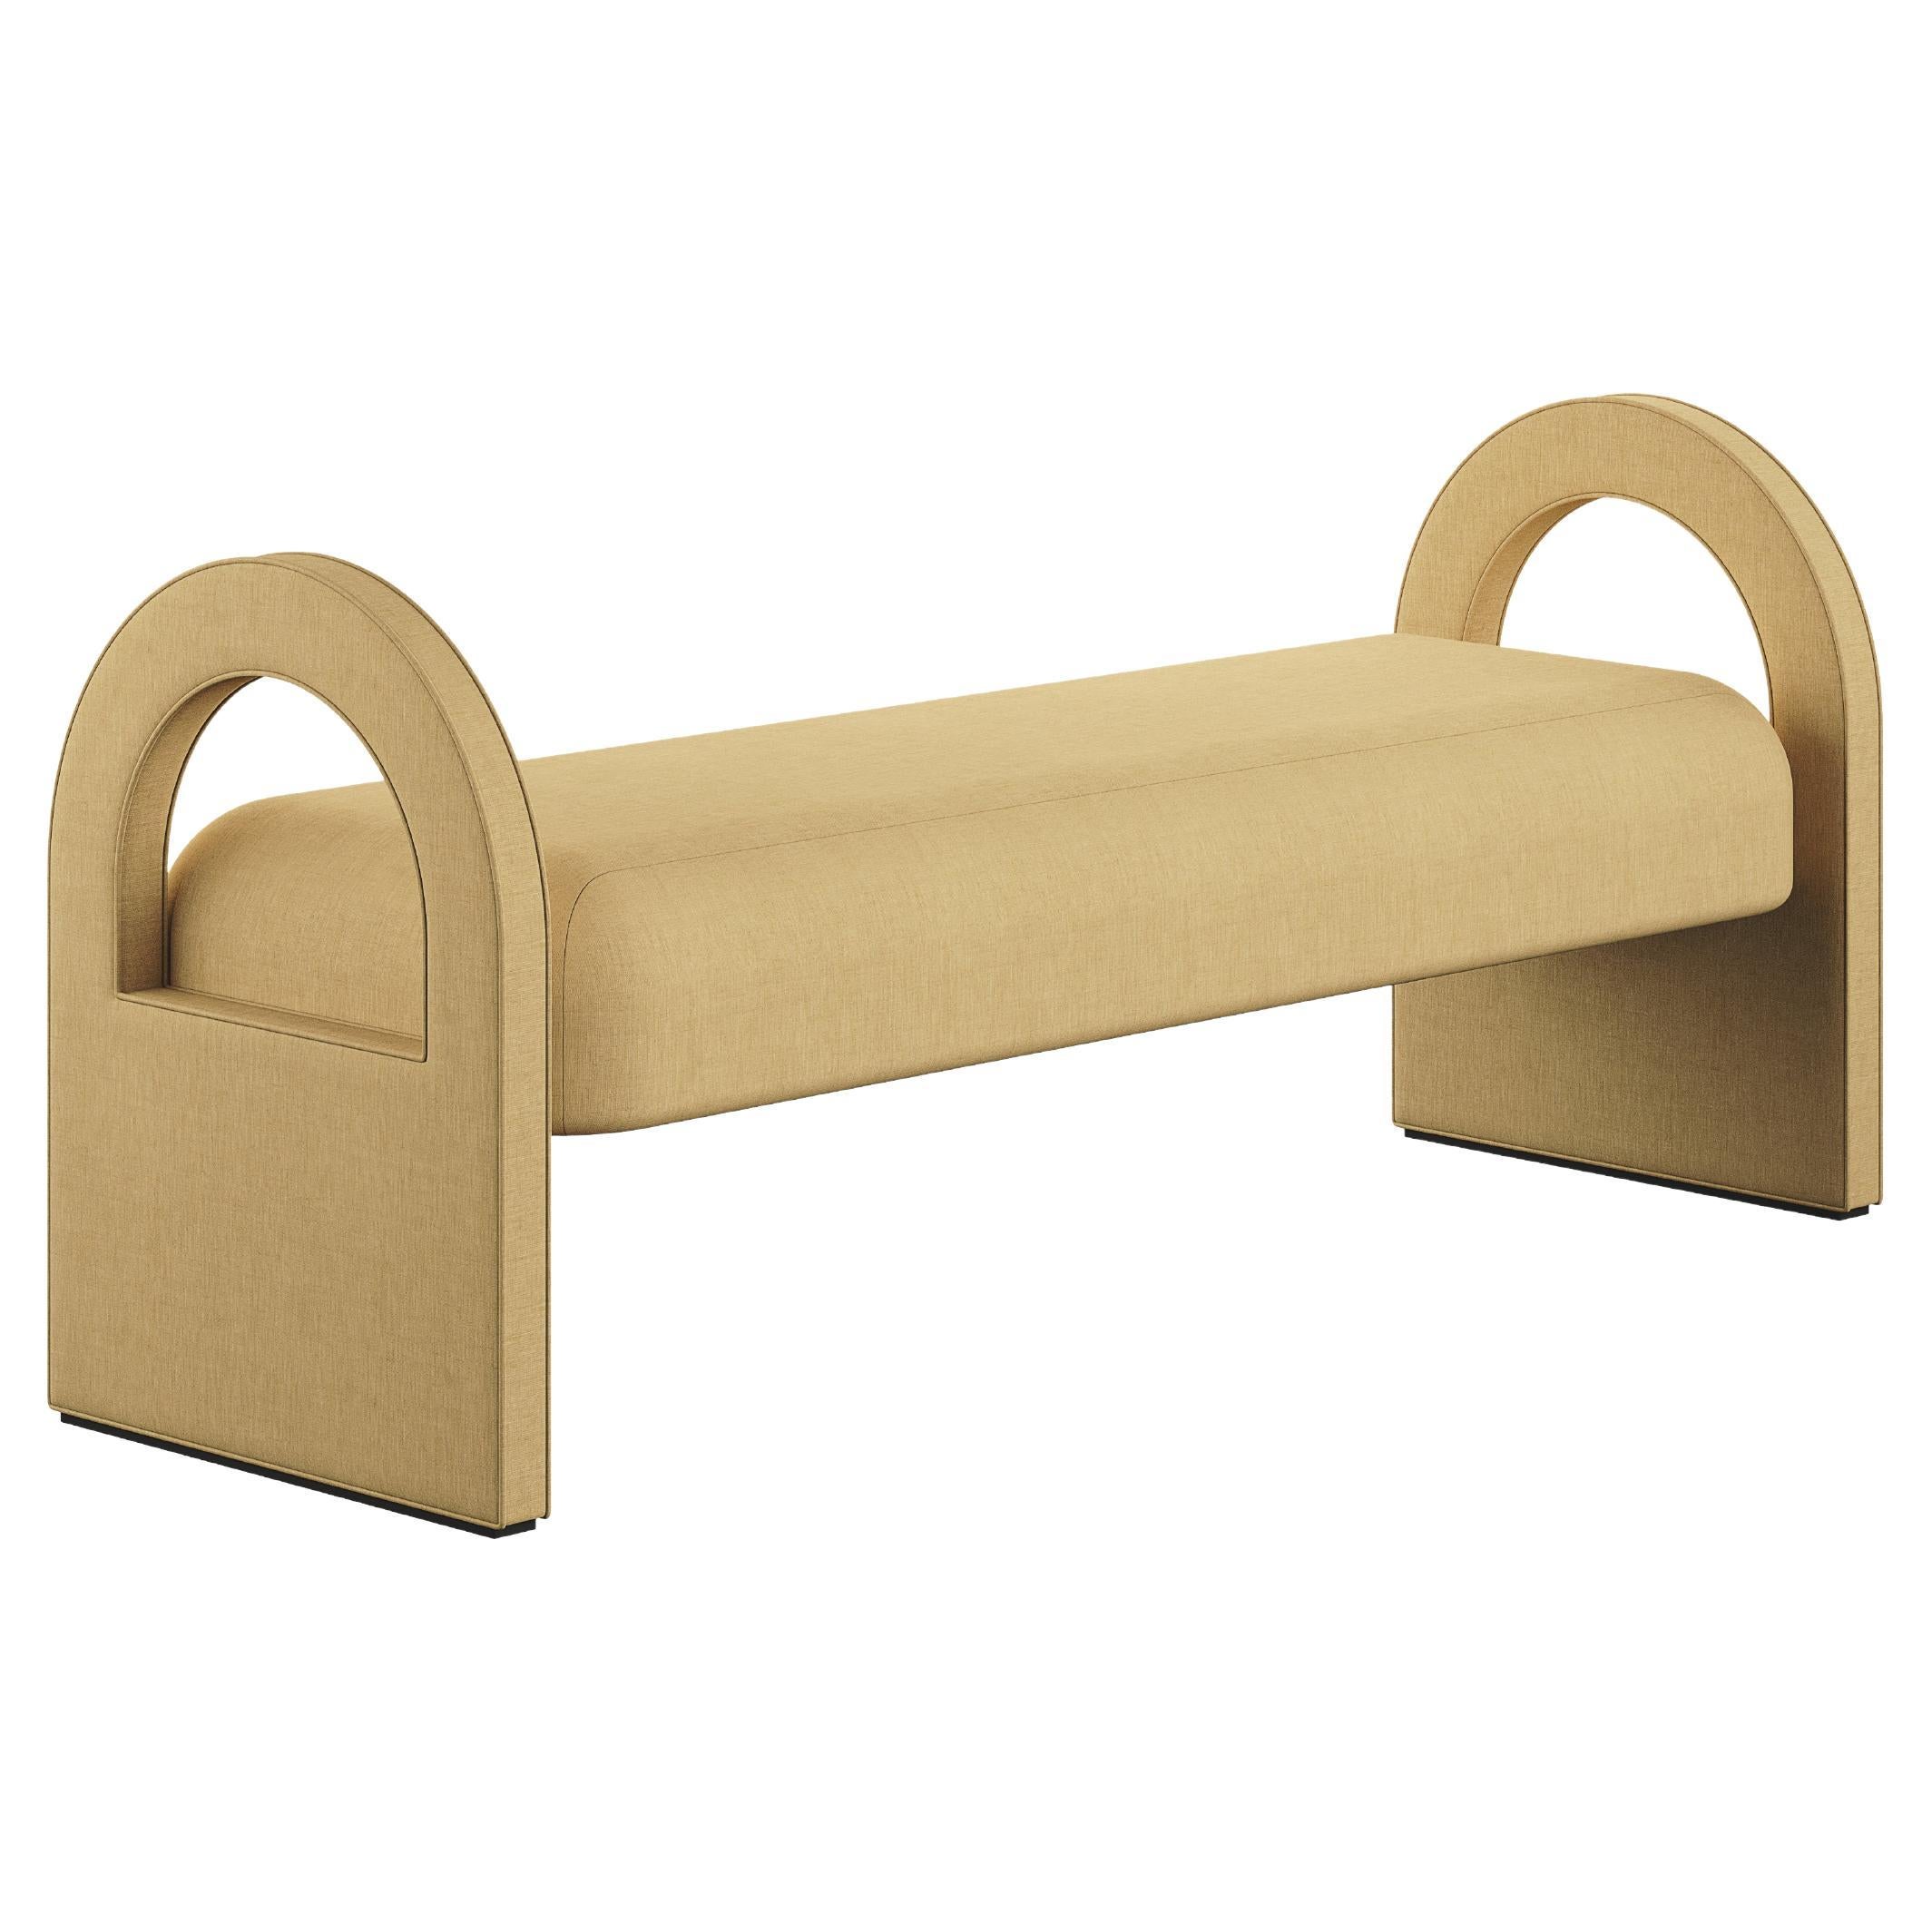 Minimal Modern Bench Full Upholstered in Natural Beige Linen